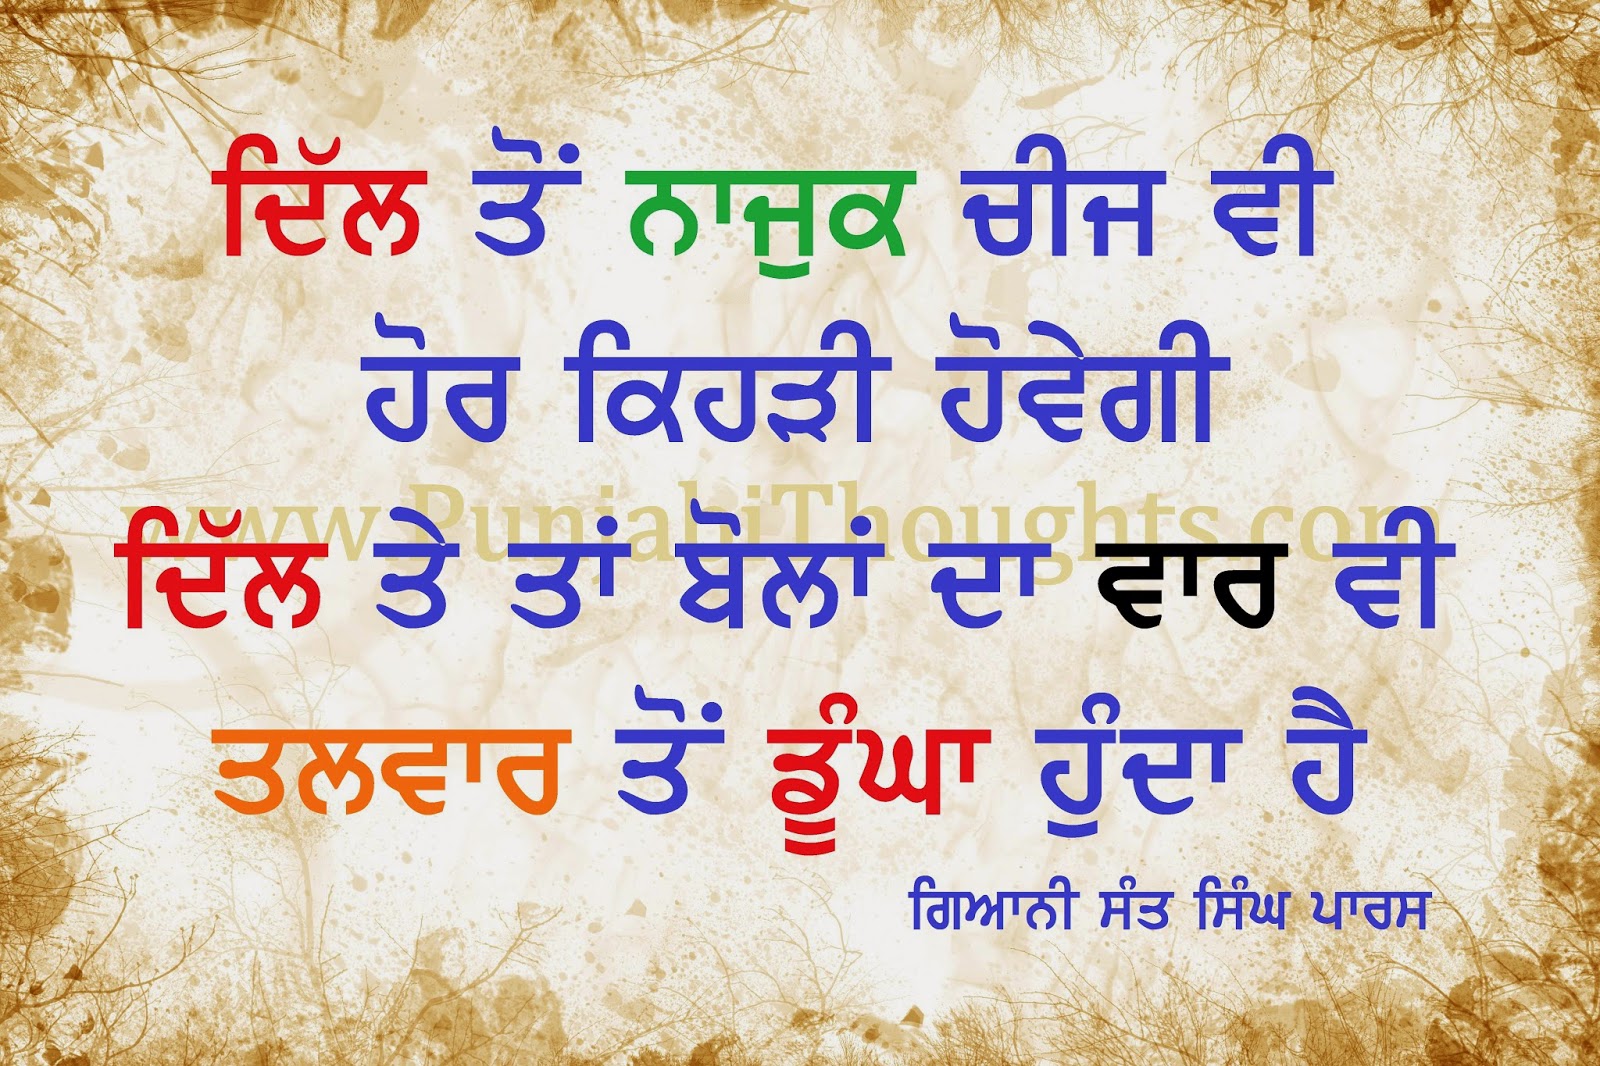  Punjabi  Quotes  About Life  QuotesGram